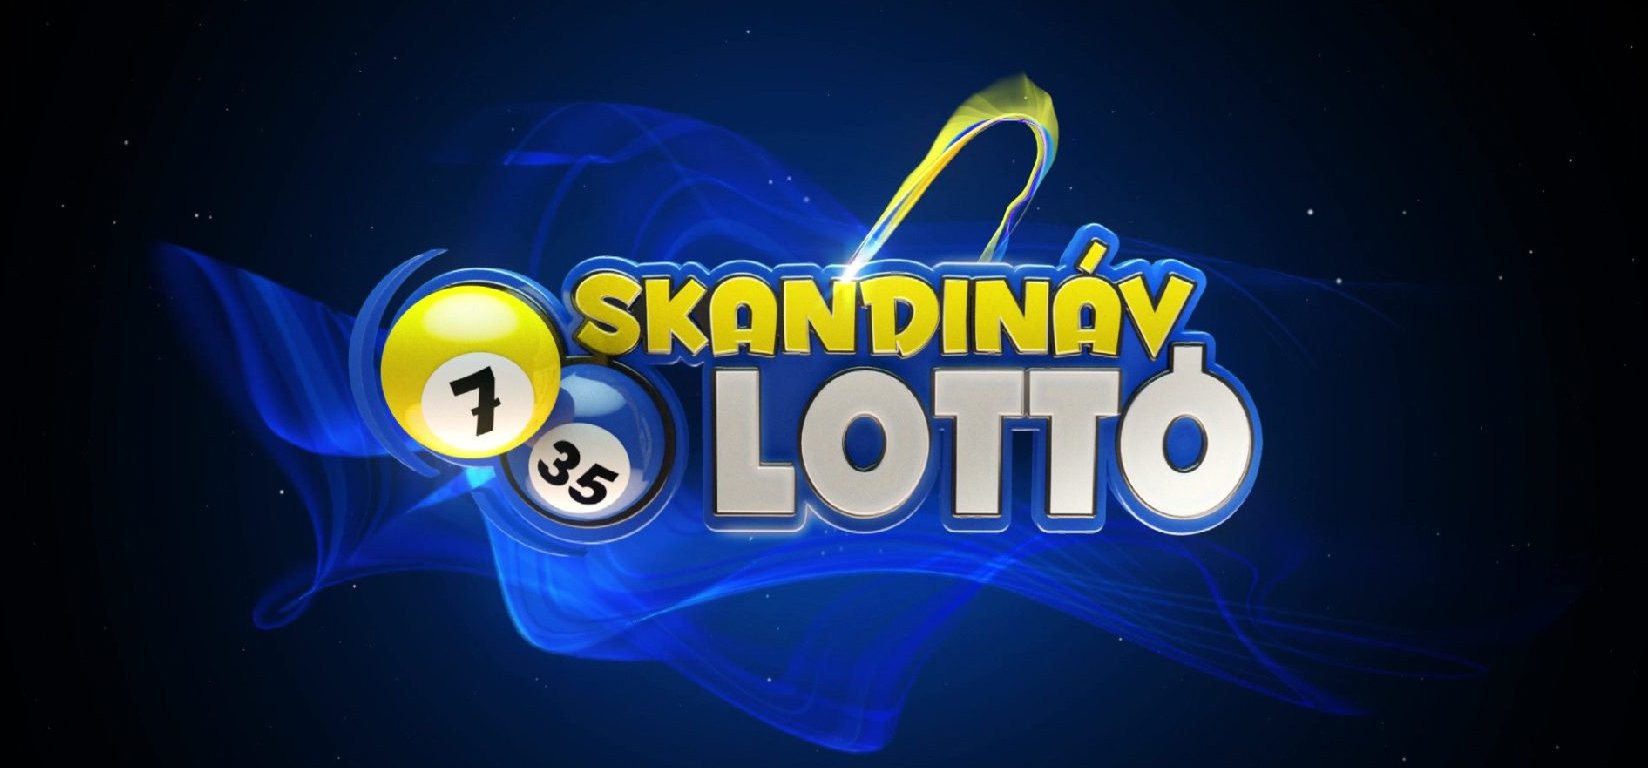 Skandináv lottó: újra volt telitalálat? Lássuk, a mostani nyerőszámokat!